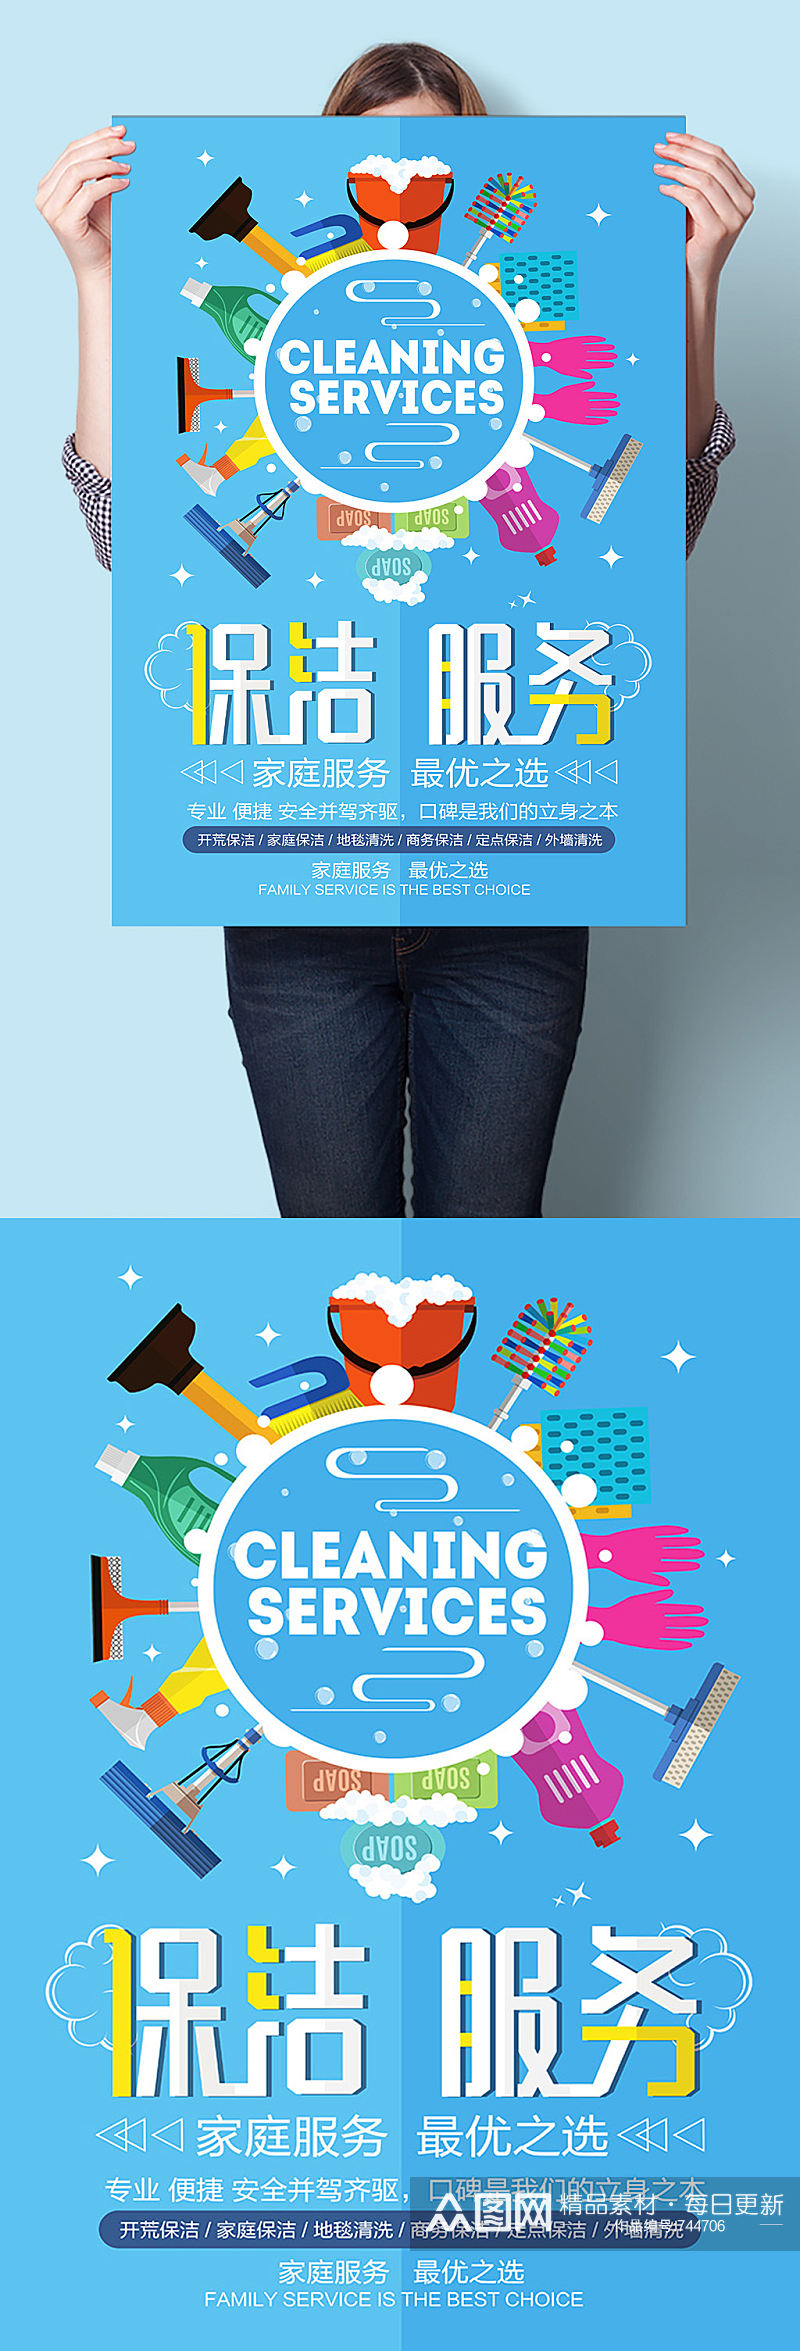 保洁服务广告宣传海报素材